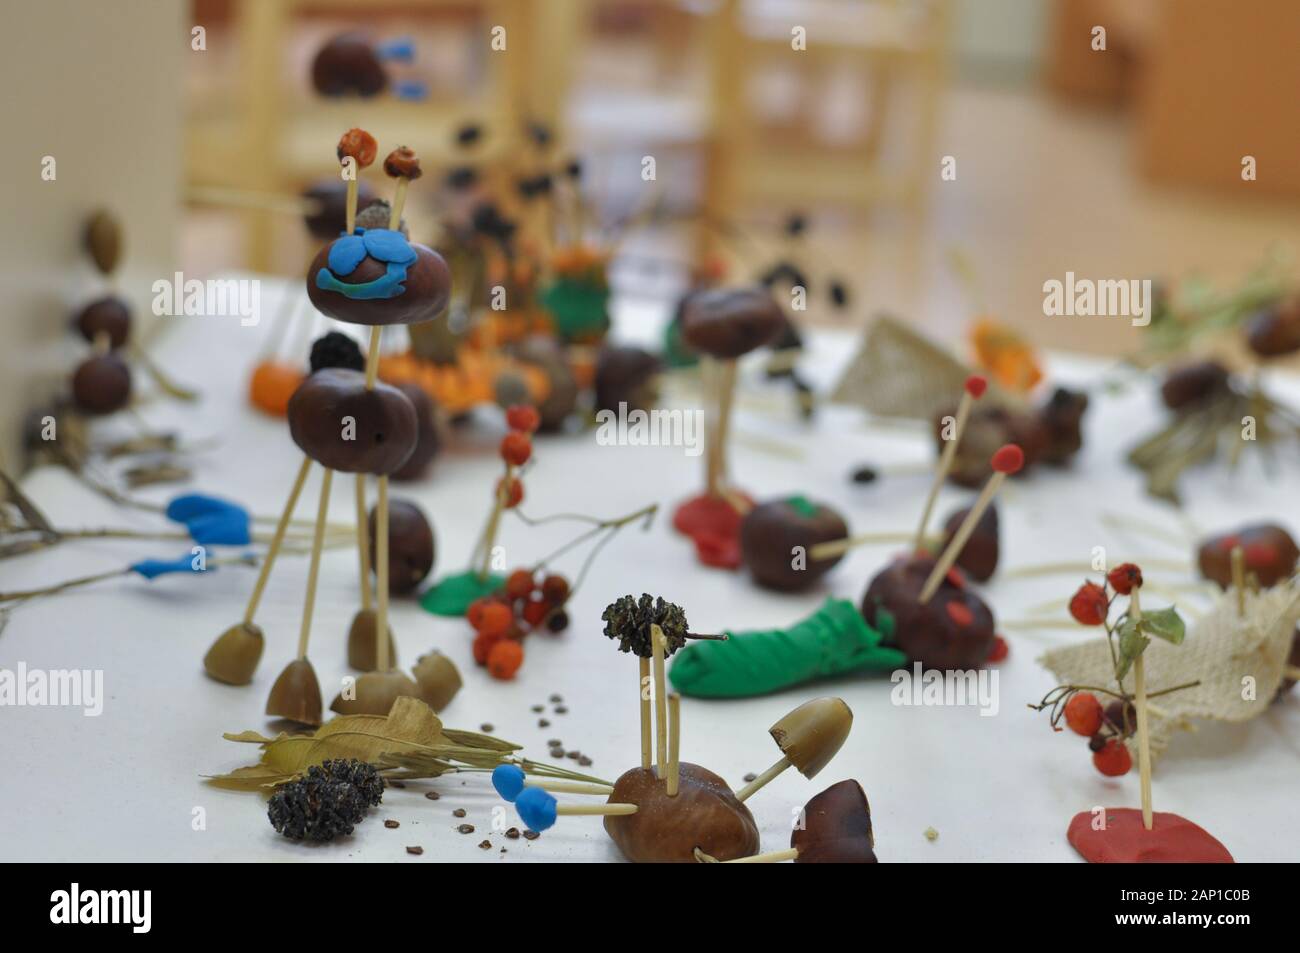 Children's artesanías hechas de materiales naturales, master class para niños Foto de stock